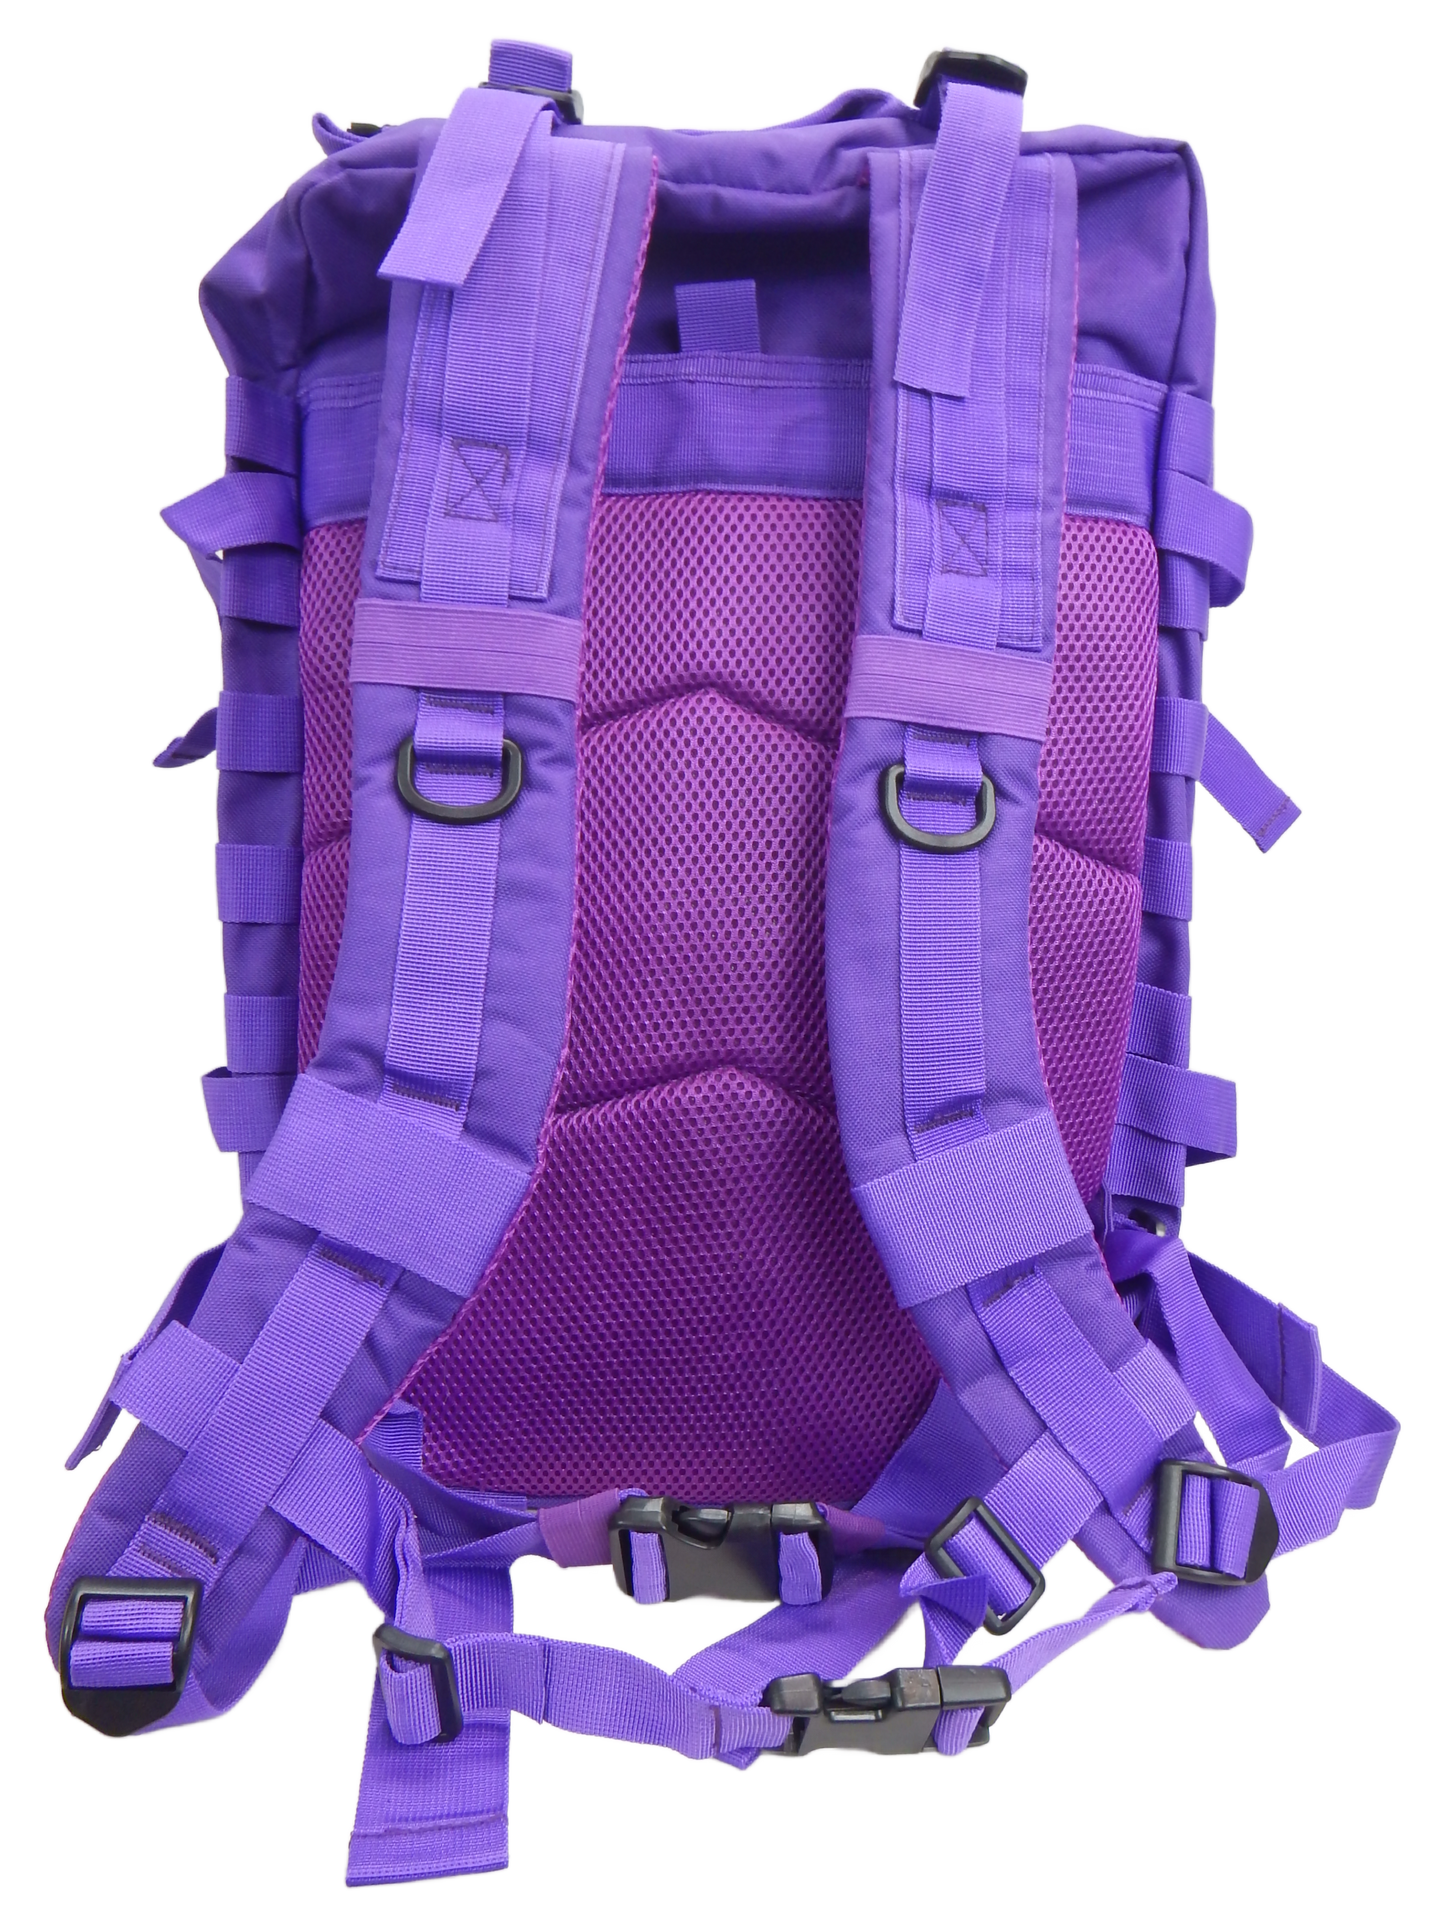 Tactical Backpack - 45 Liter